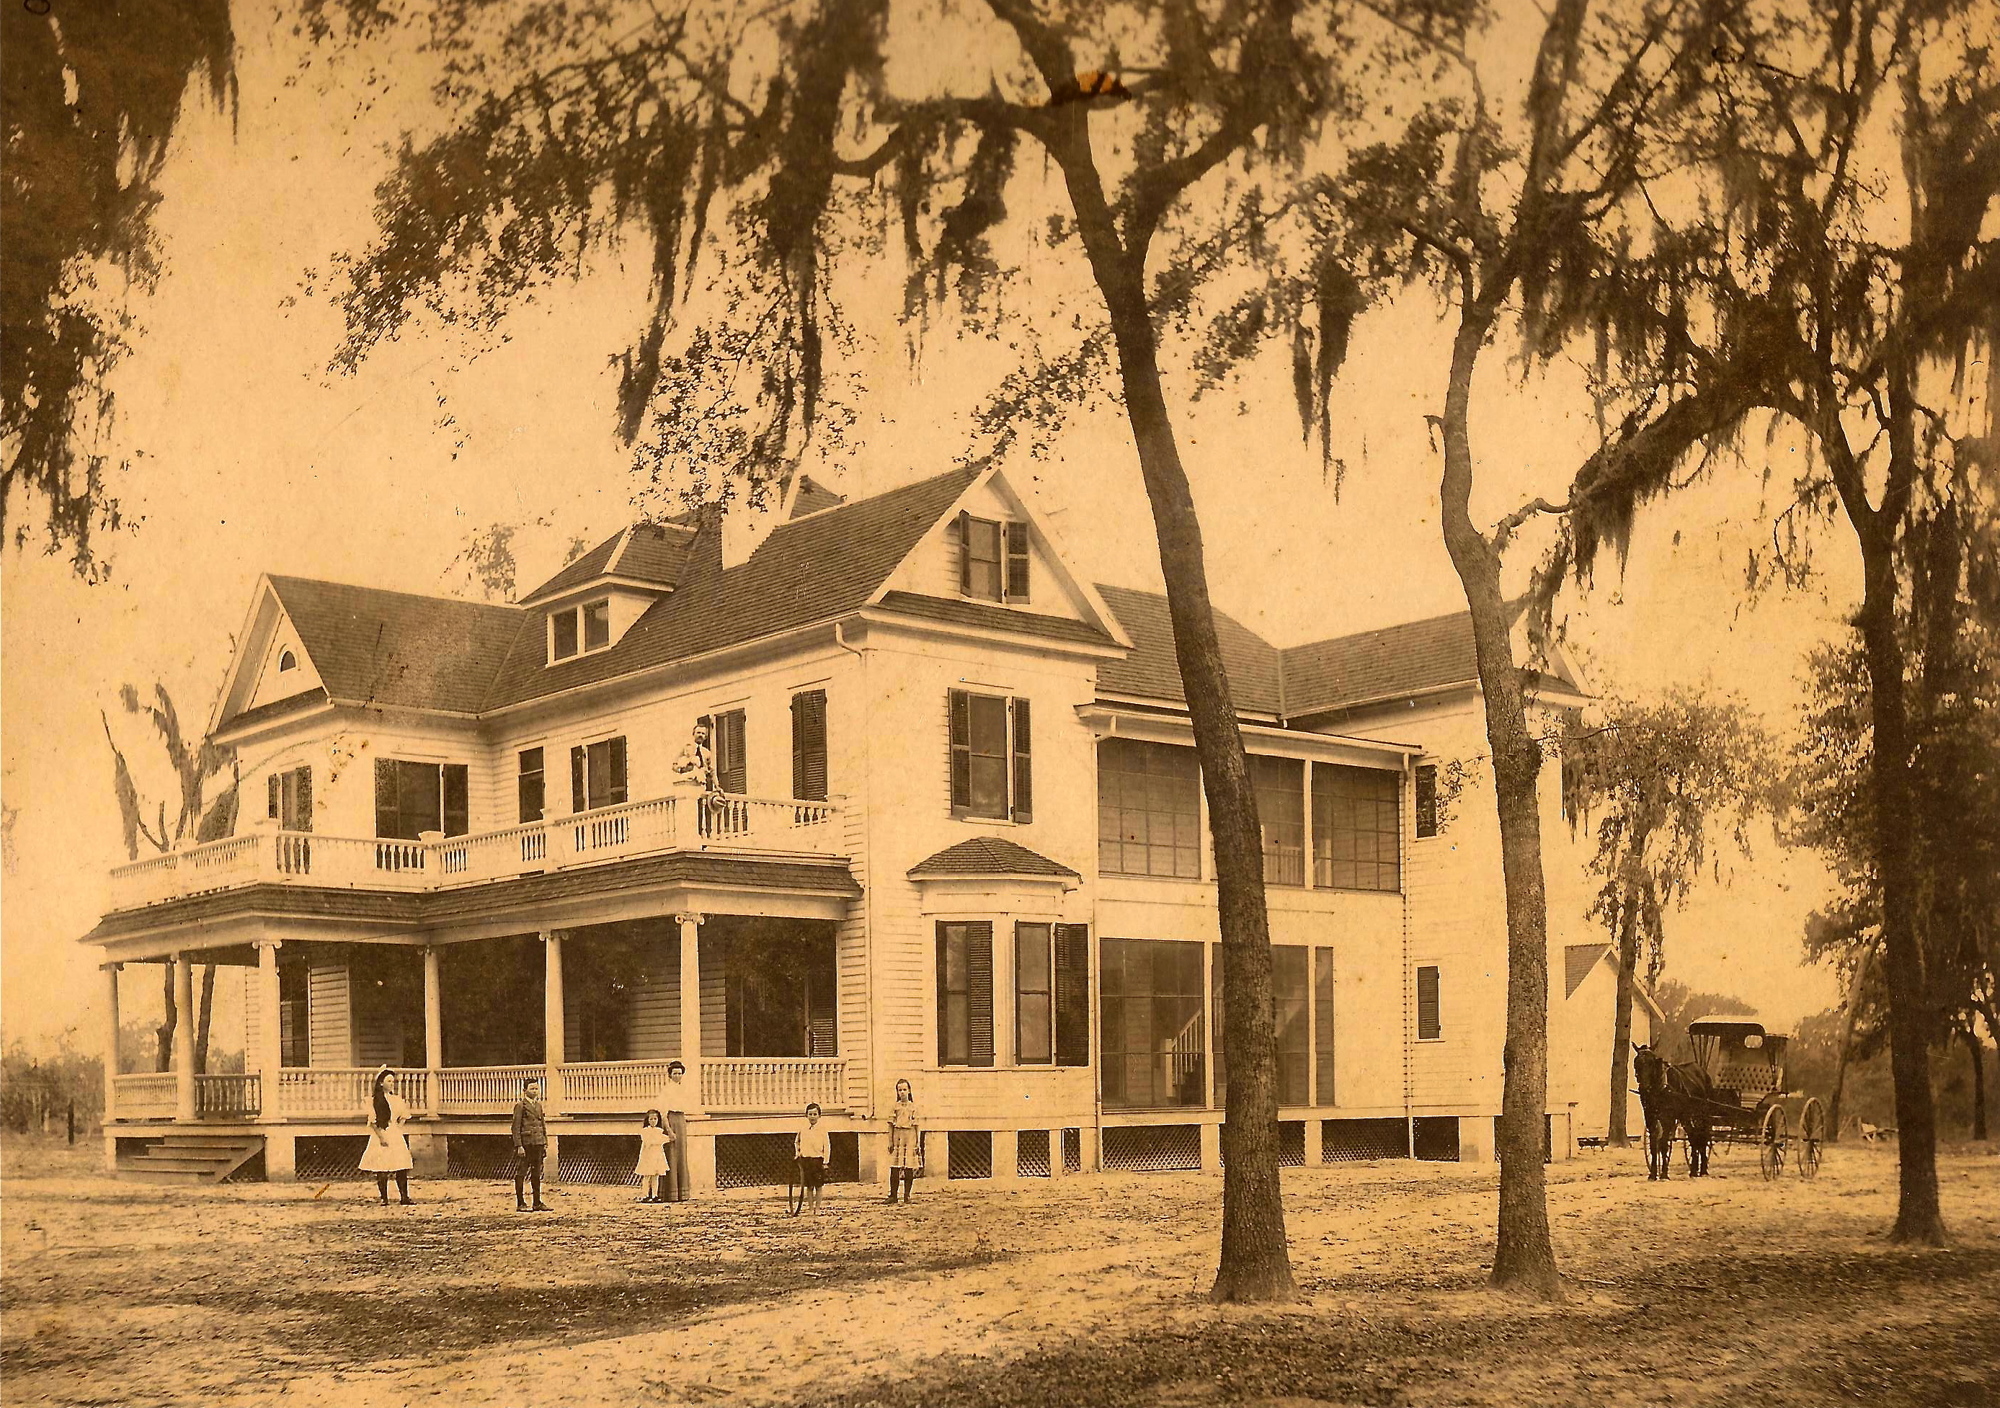 L.W. Tilden’s home in Tildenville.